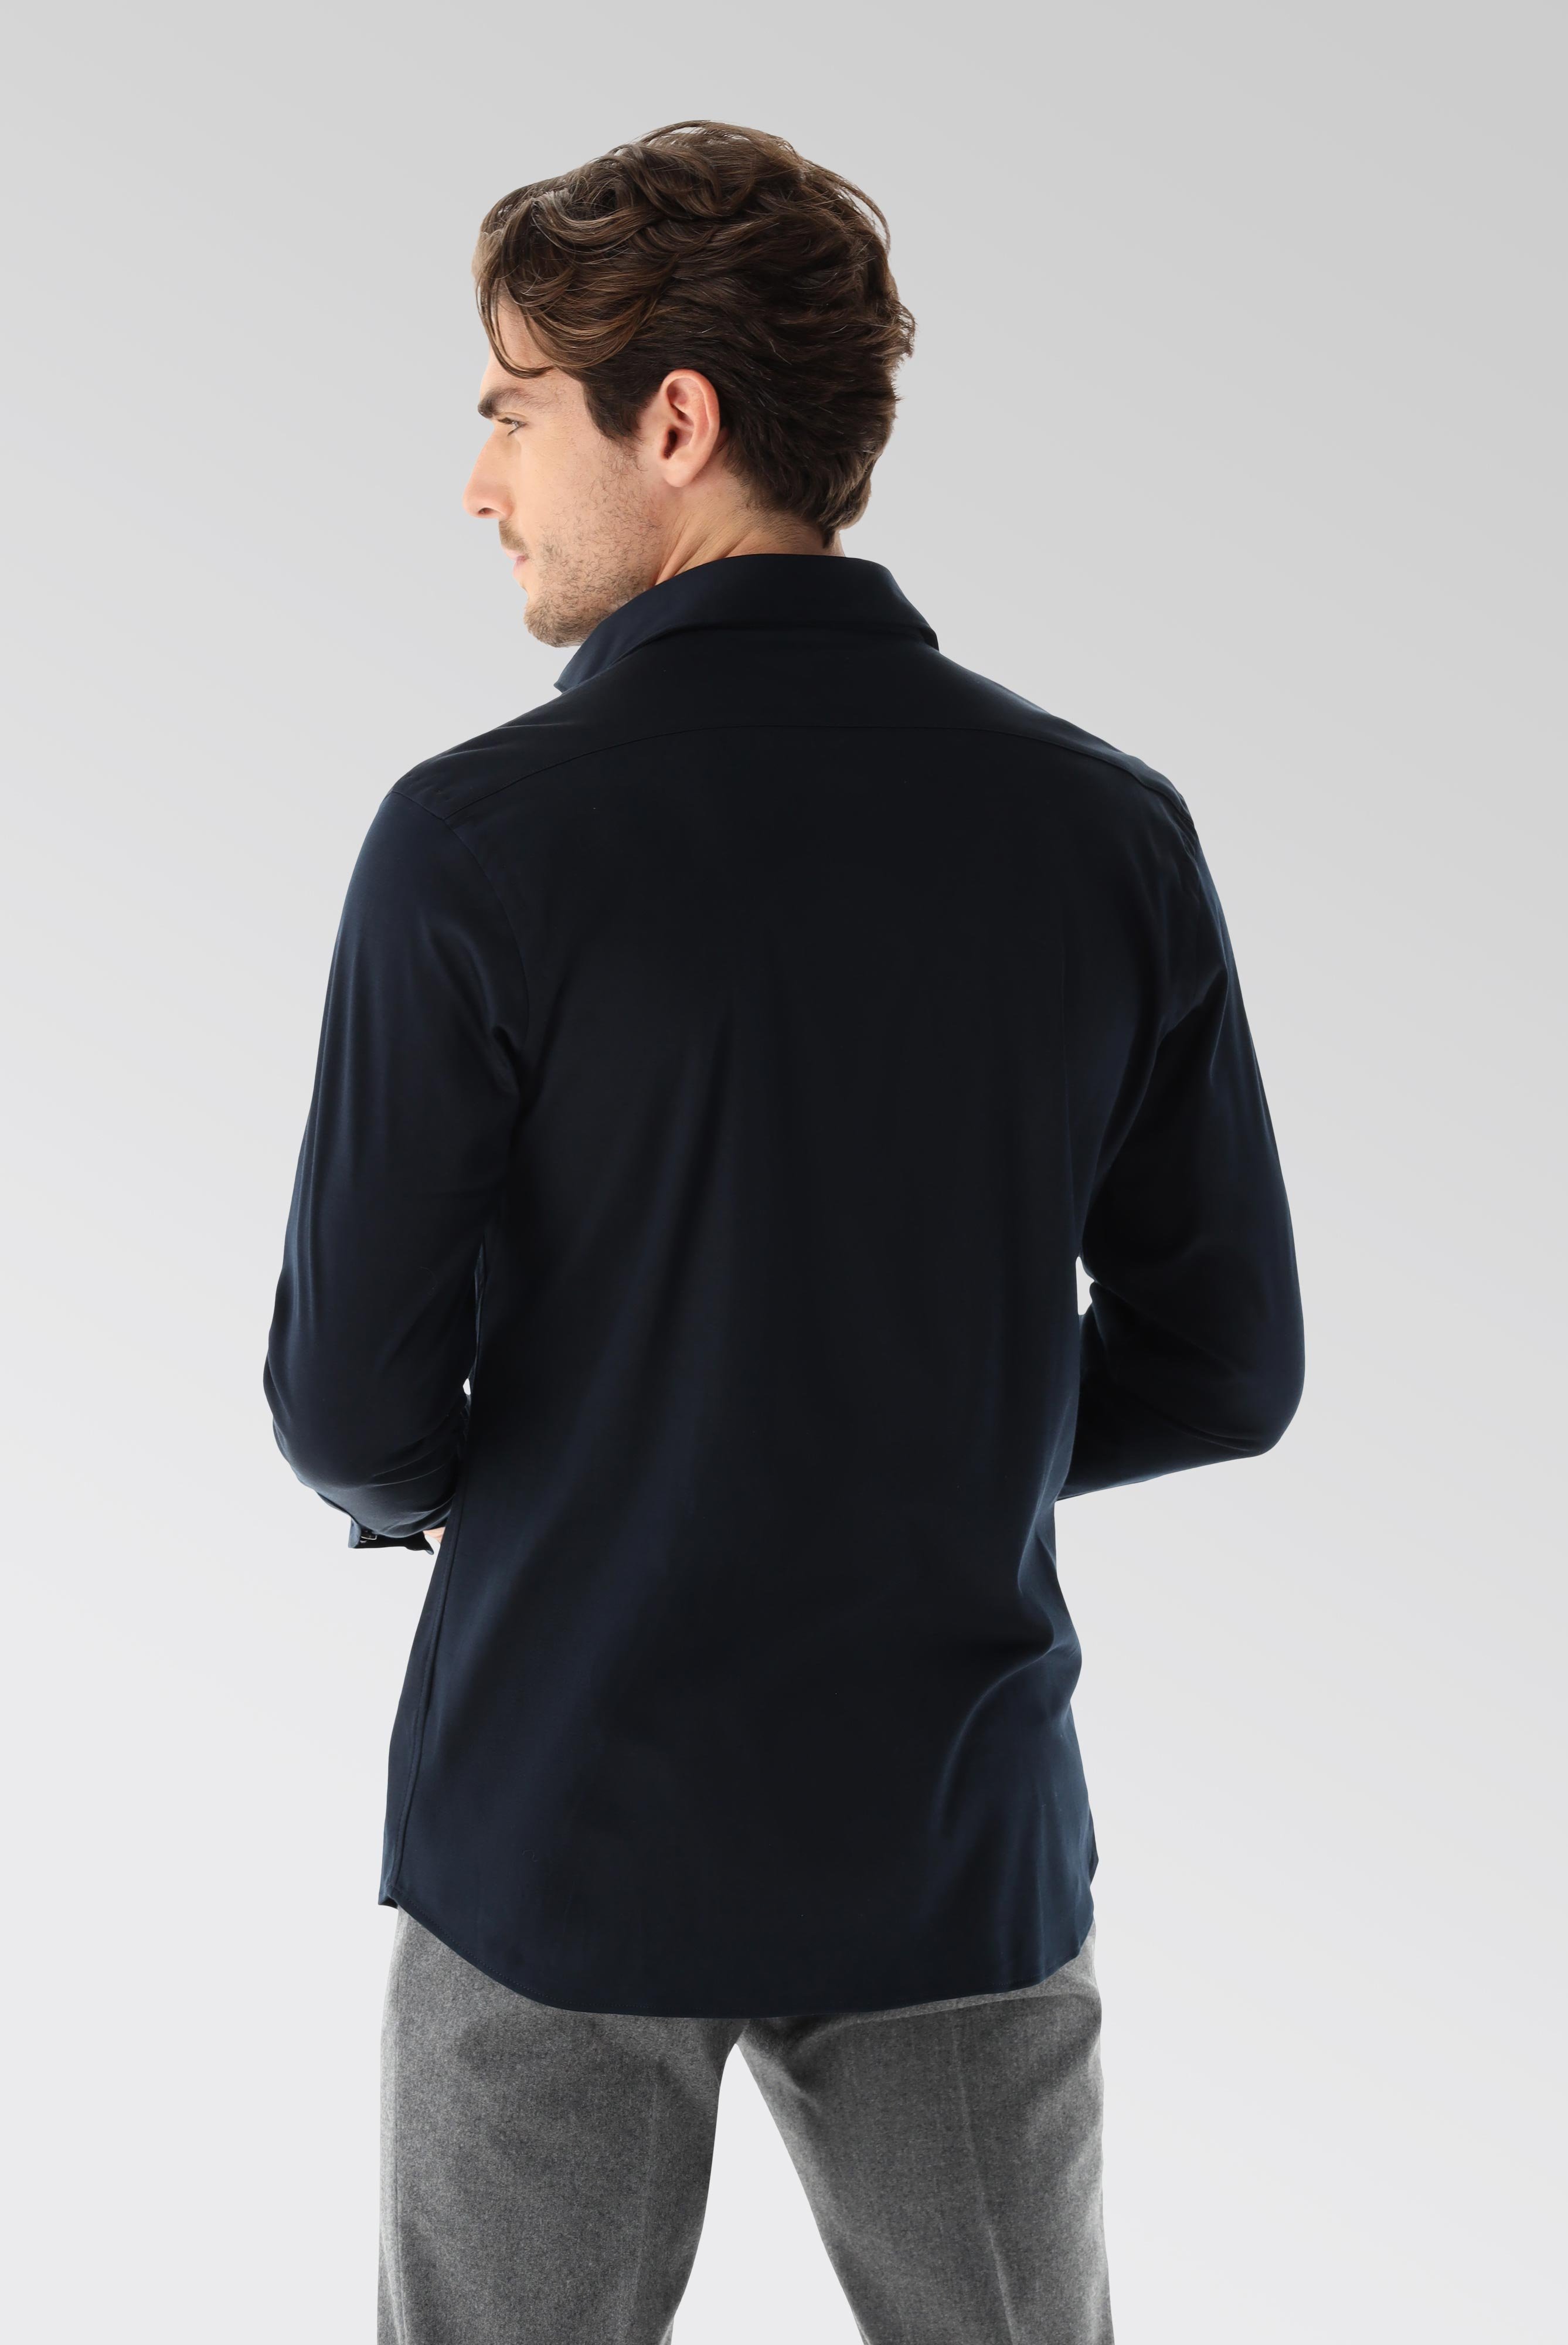 Jersey Hemden+Jersey Hemd aus Schweizer Baumwolle Slim Fit+20.1682.UC.180031.790.XL